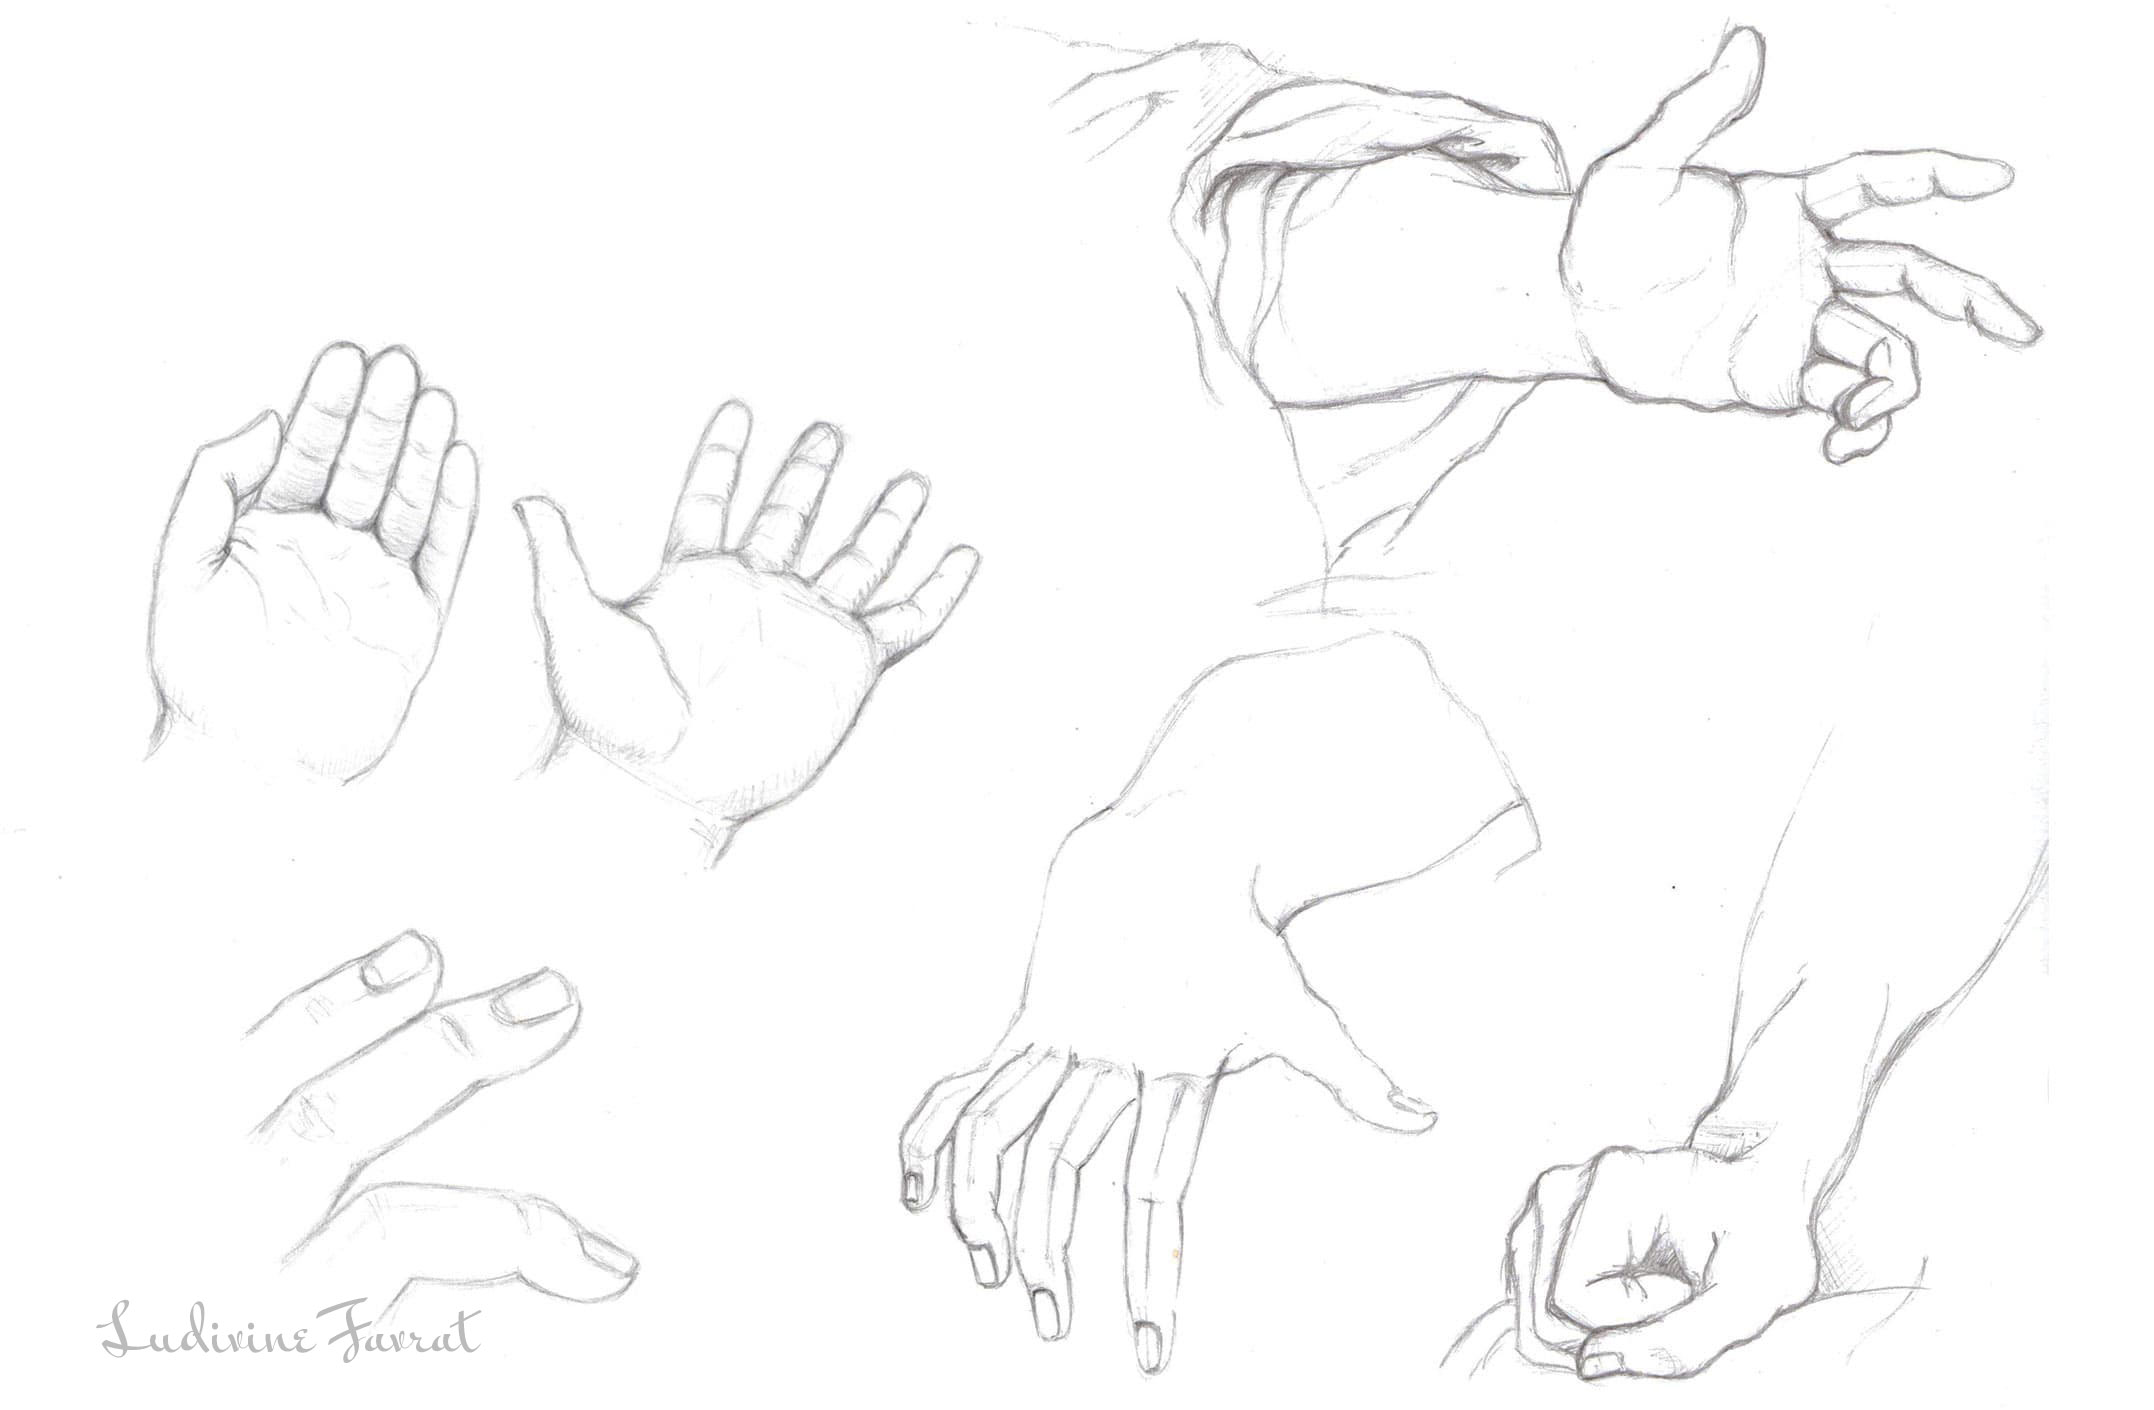 Étude de mains au crayon d'après oeuvres de Michel-Ange